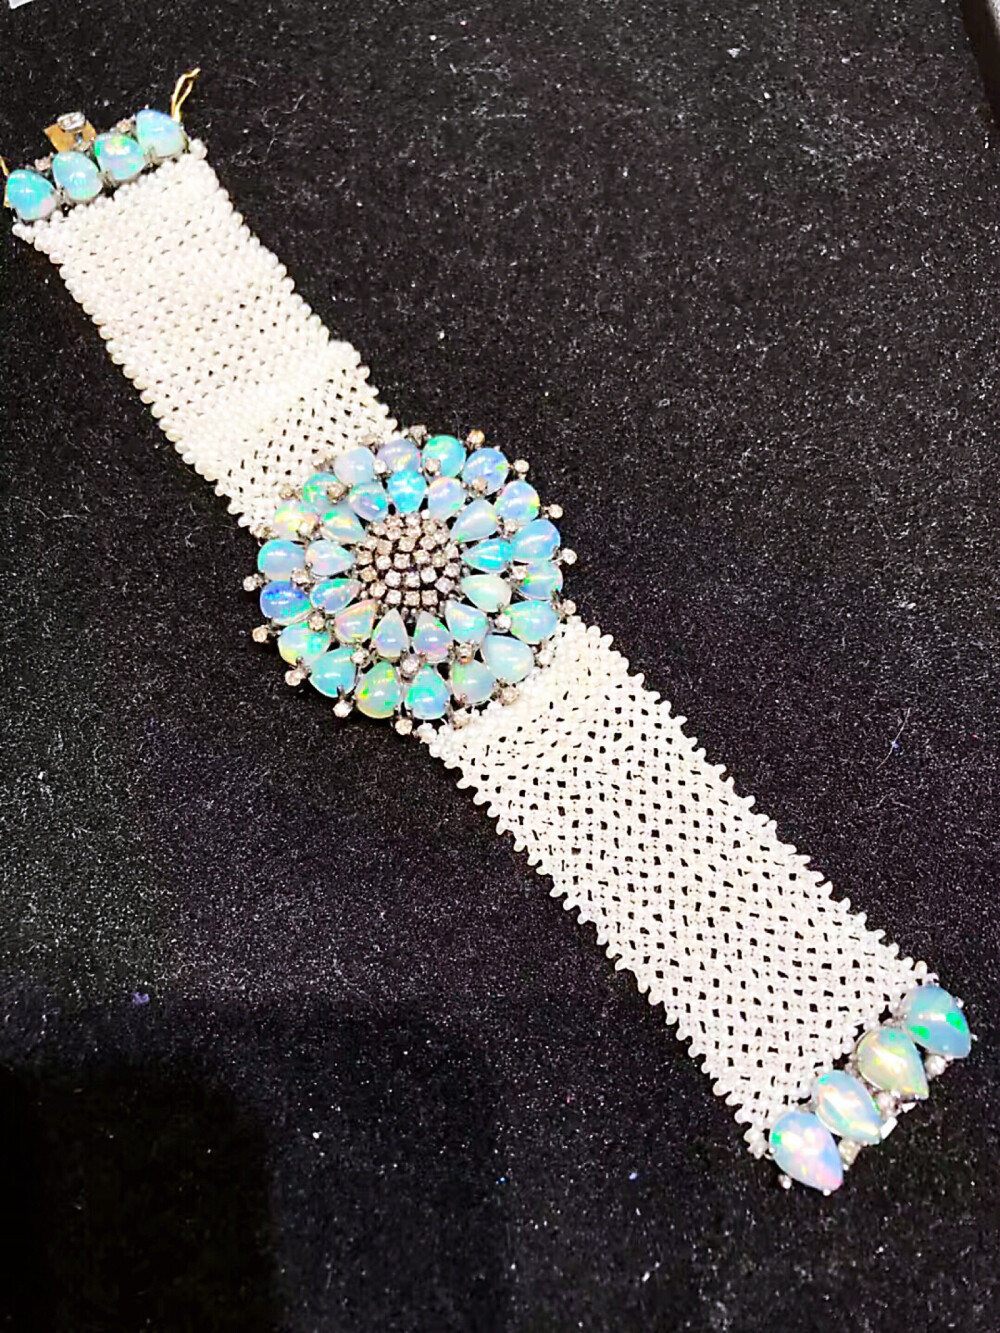 维多利亚时期的澳宝钻石珍珠编织手链，39颗水晶澳宝拼成五彩缤纷的手链搭扣，镶钻大概2.25克拉，珍珠编织链，金银混镶，重35.83克